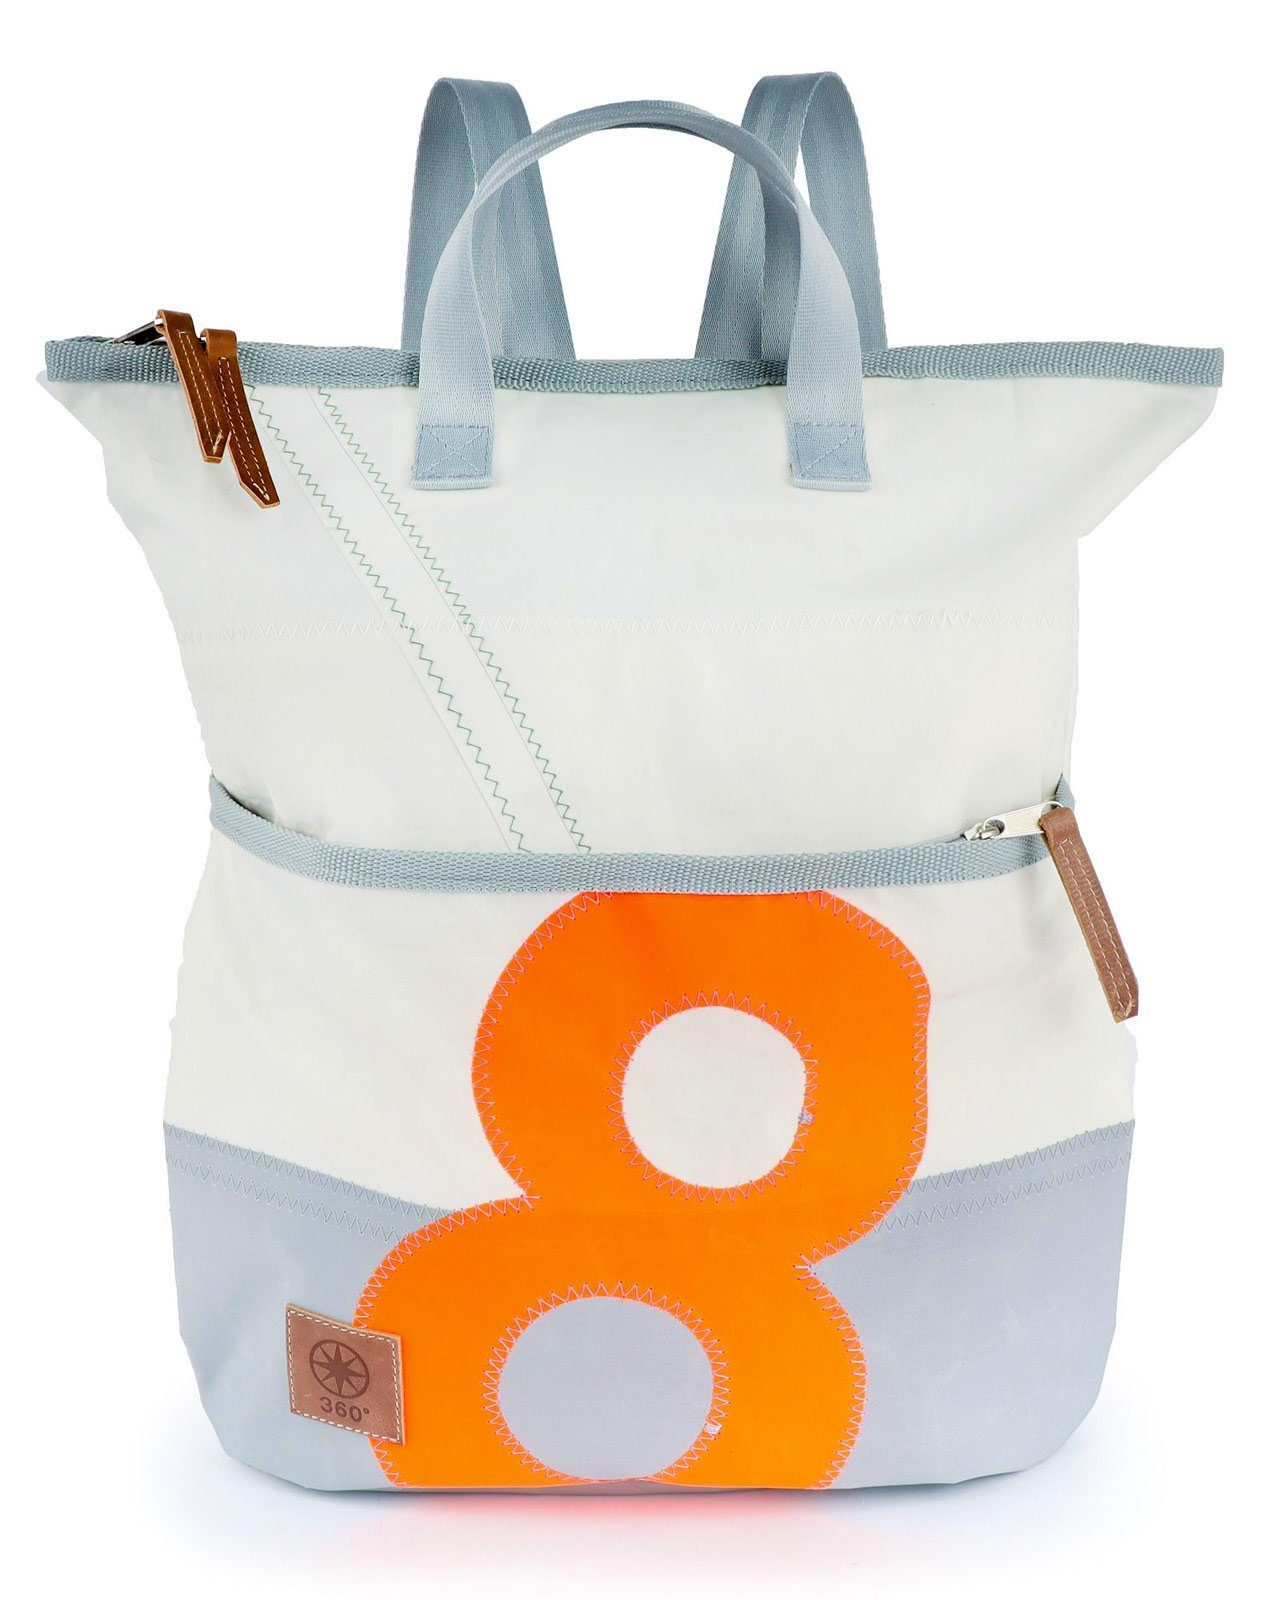 360Grad Tagesrucksack Rucksack Tasche Ketsch orange, Mini, weiß-grau Segeltuch recyceltes